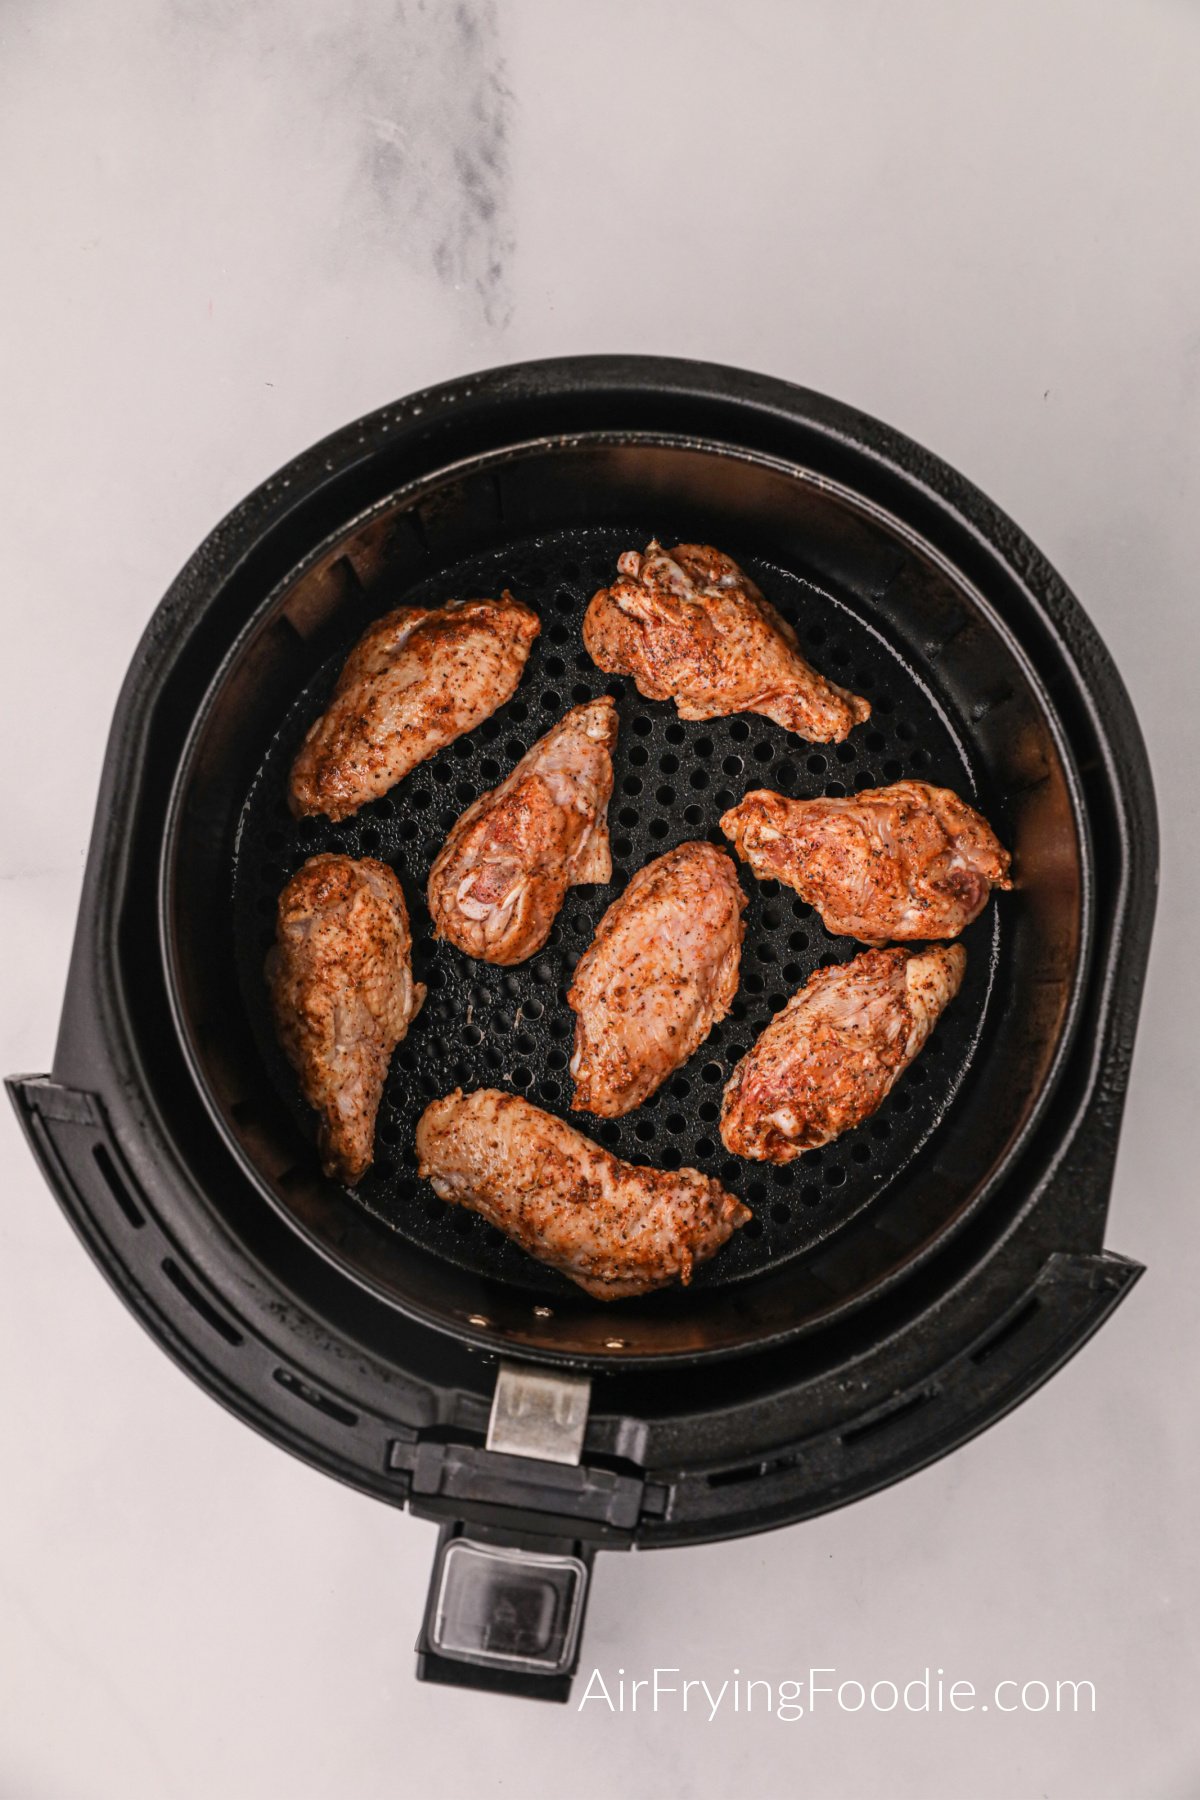 Seasoned chicken wings in the basket of the air fryer. 